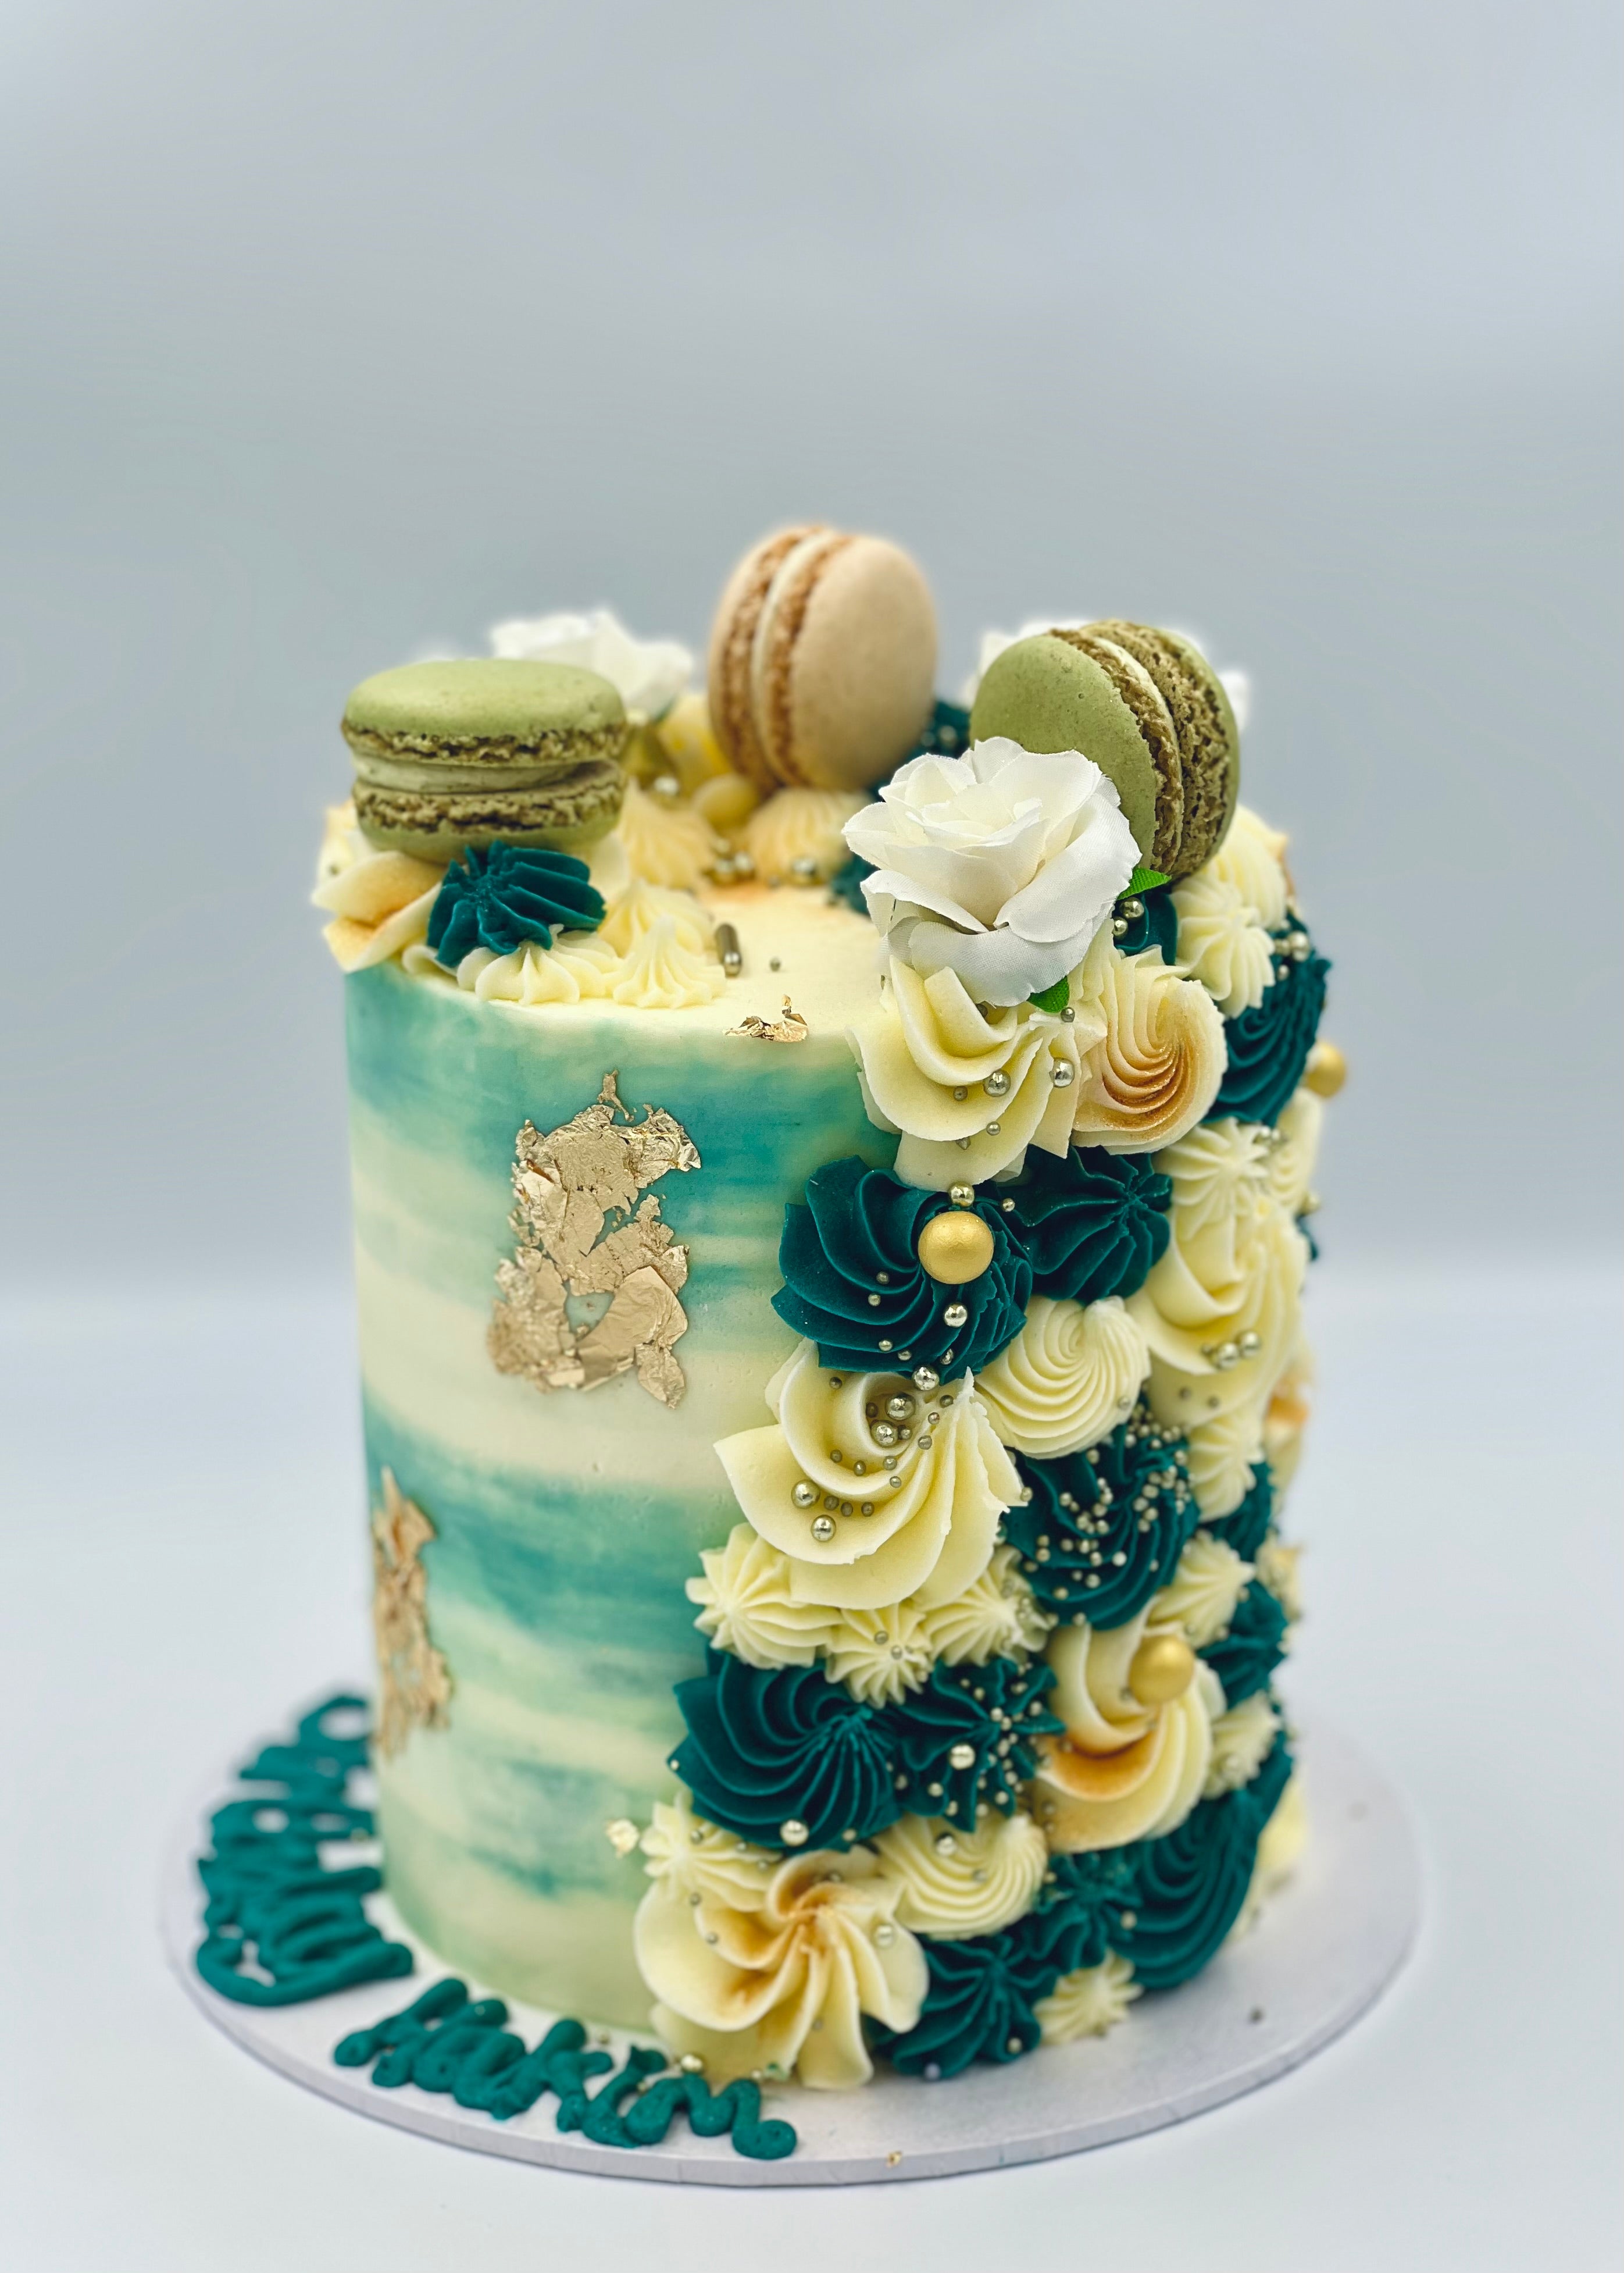 Share 71+ macaron cake design latest - awesomeenglish.edu.vn